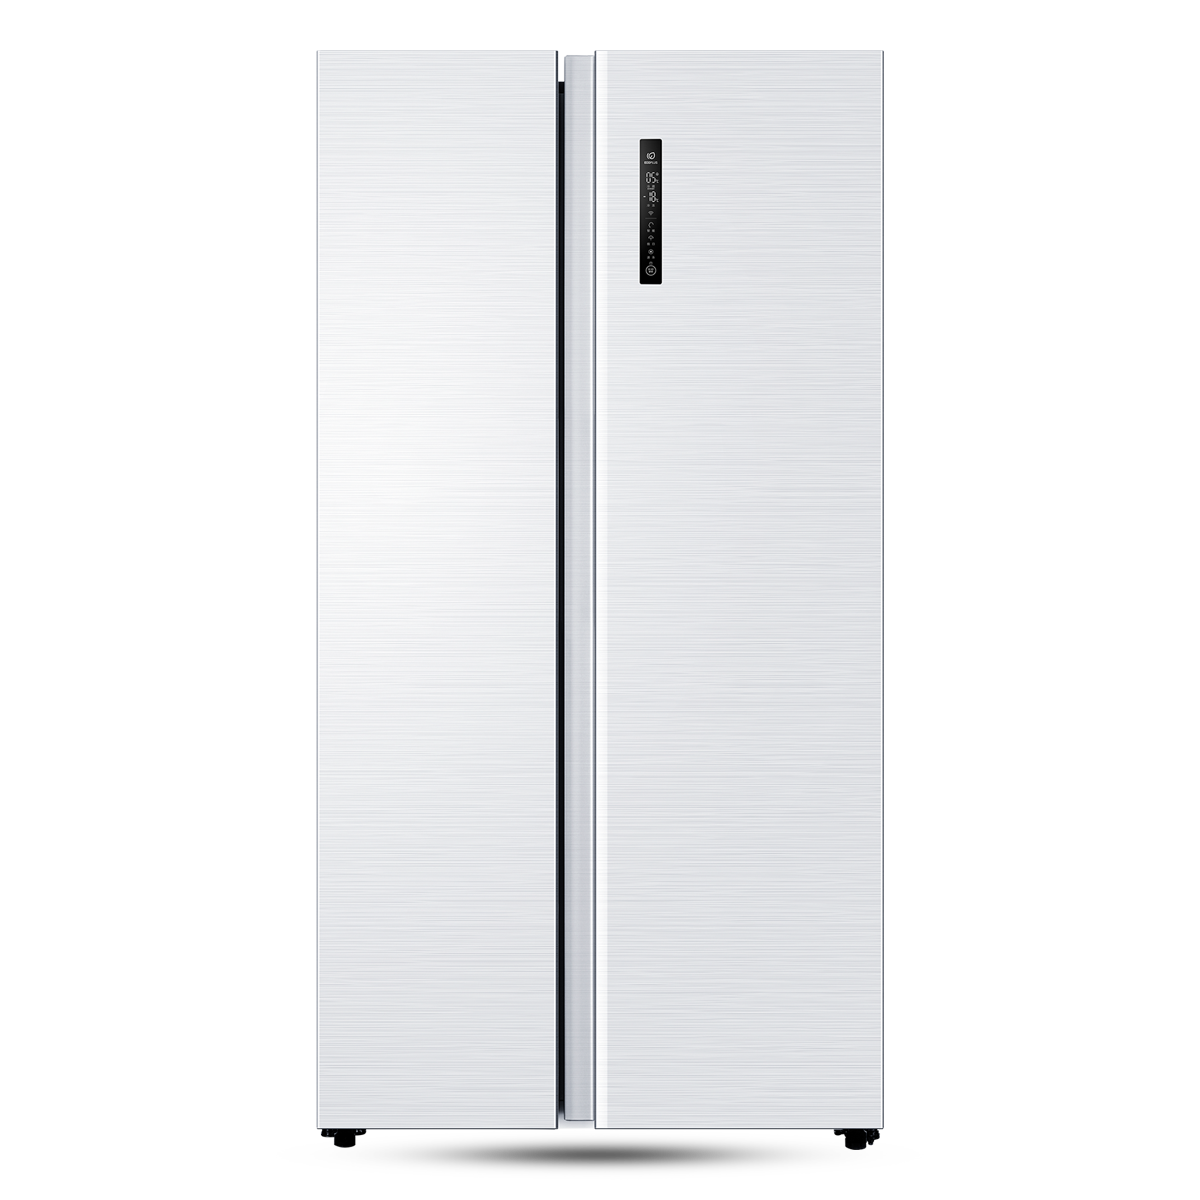 海尔Haier冰箱 BCD-510WDEM 说明书